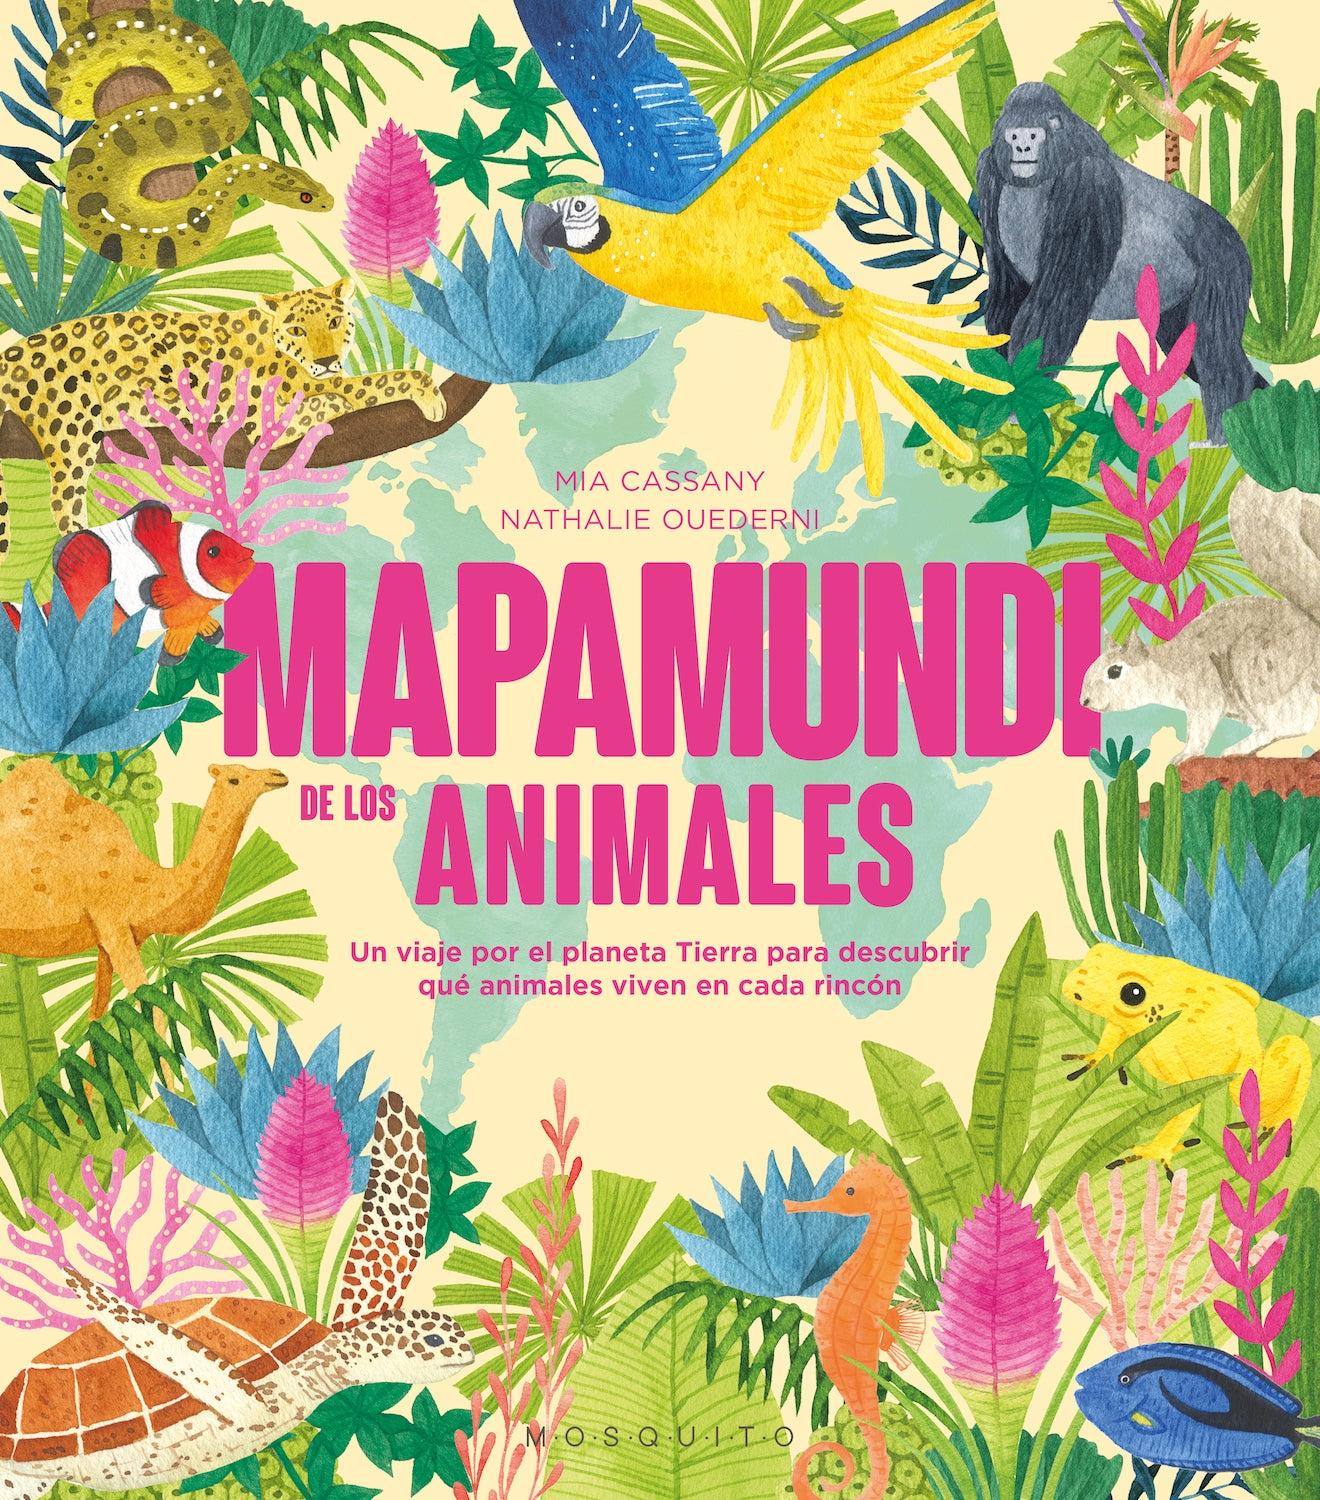 Mapamundi de los Animales "Un Viaje por el Planeta Tierra para Descubrir que Animales Viven en Cada"